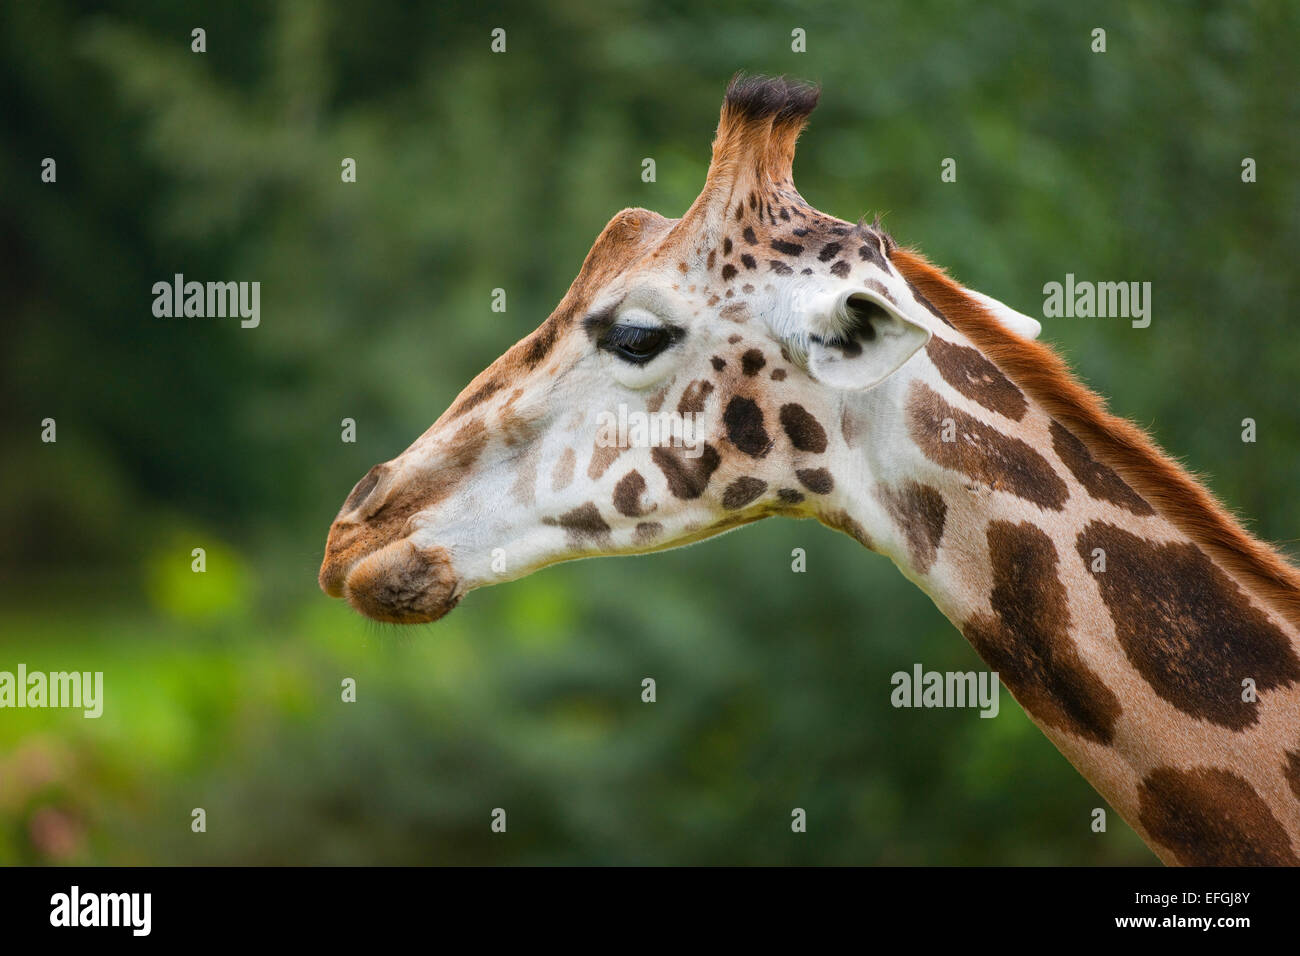 Rothschild's Giraffe (Giraffa camelopardalis rothschildi), captive, Saxony, Germany Stock Photo